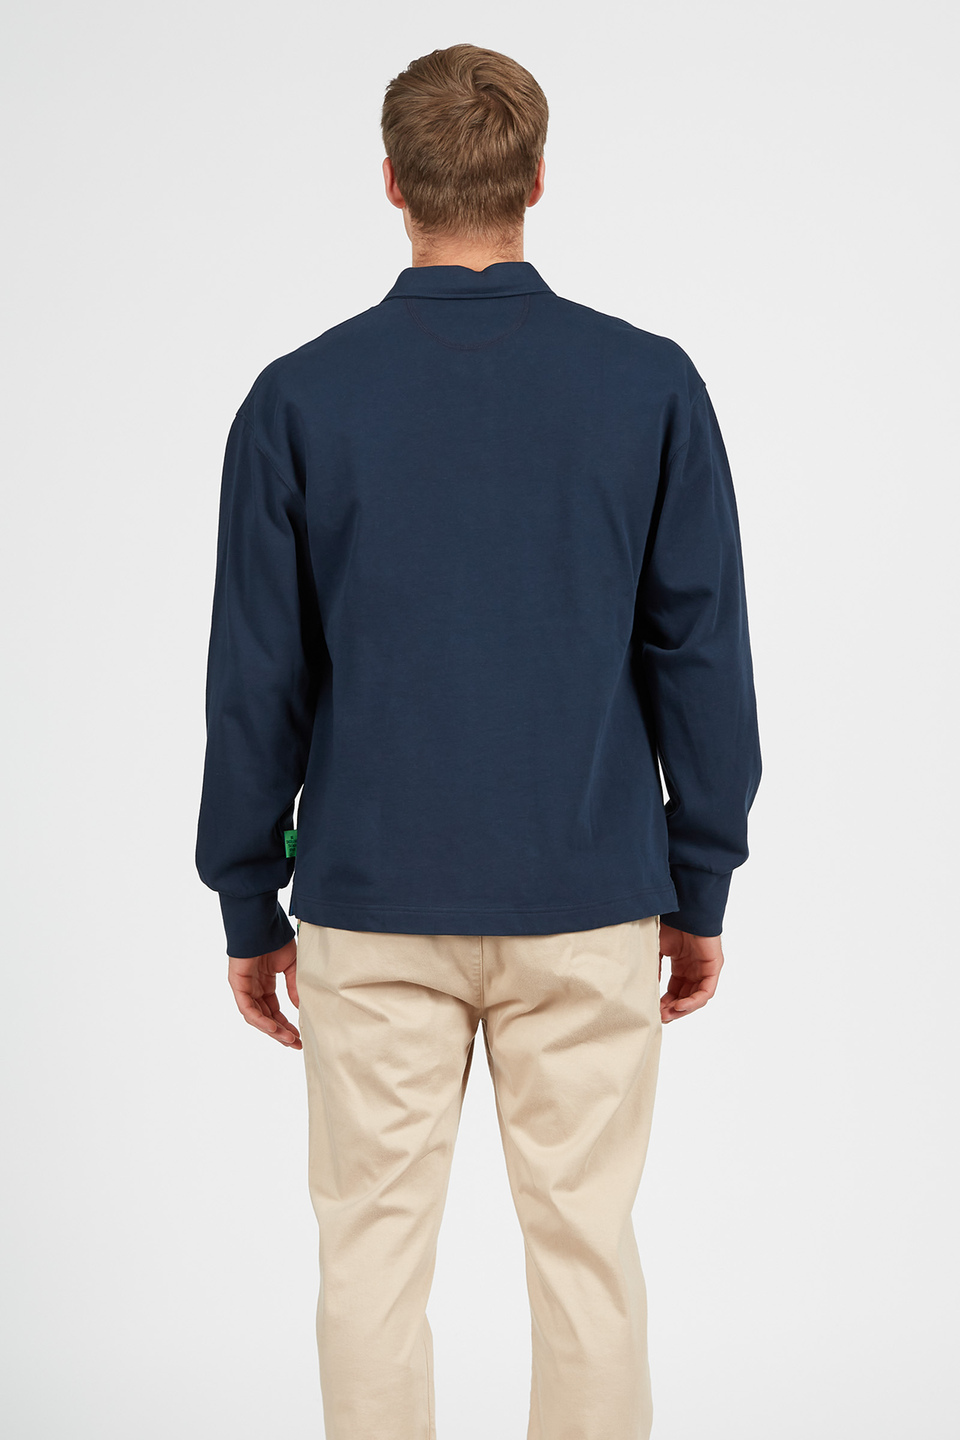 Kurzärmeliges Poloshirt Oversized-Modell aus 100% Baumwolle | La Martina - Official Online Shop